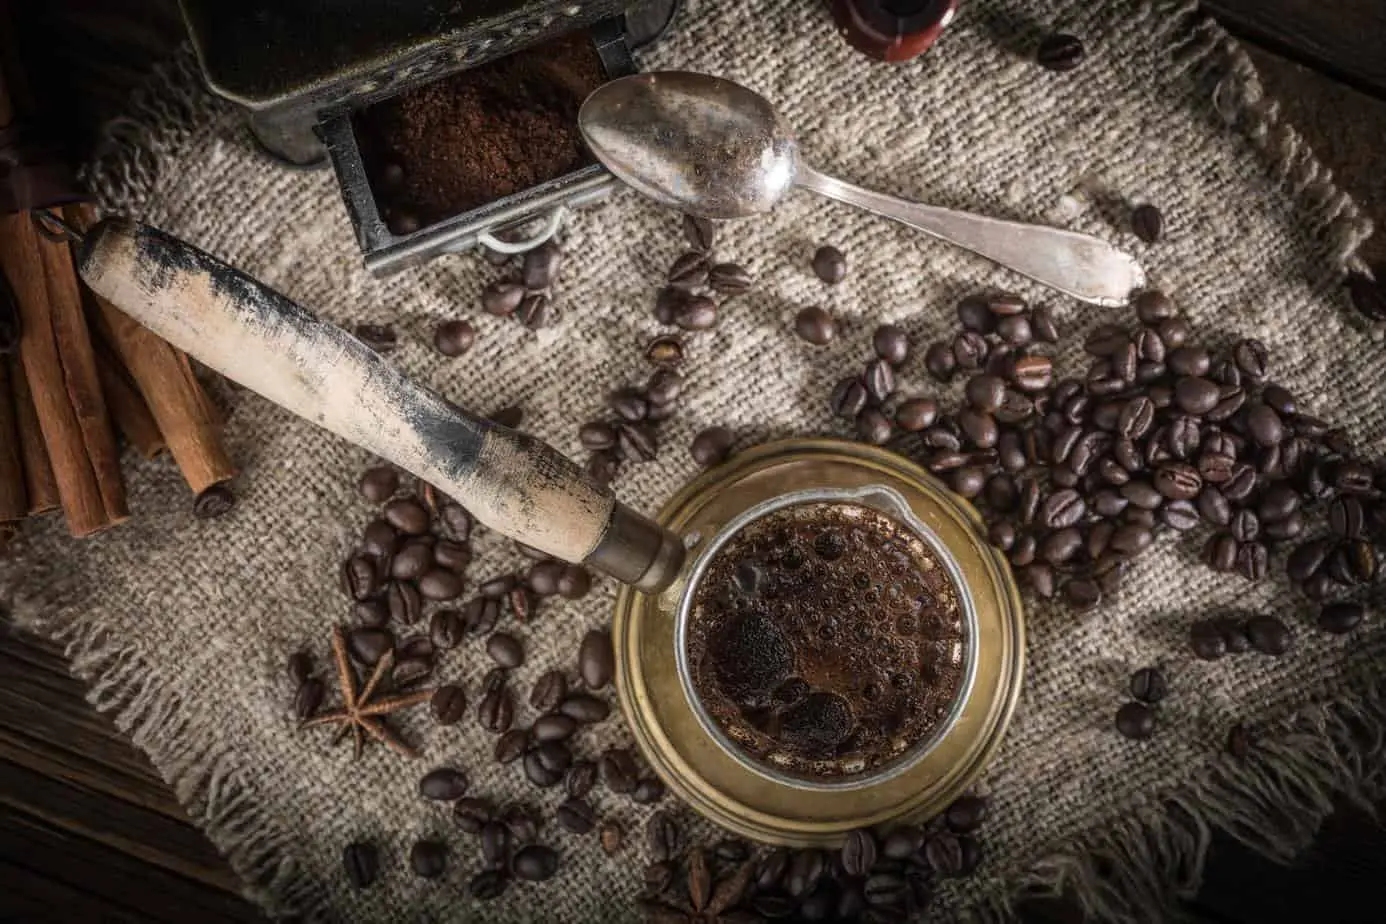 حبوب البن العربية والتوابل على طاولة خشبية تعرض ثقافة القهوة العربية.